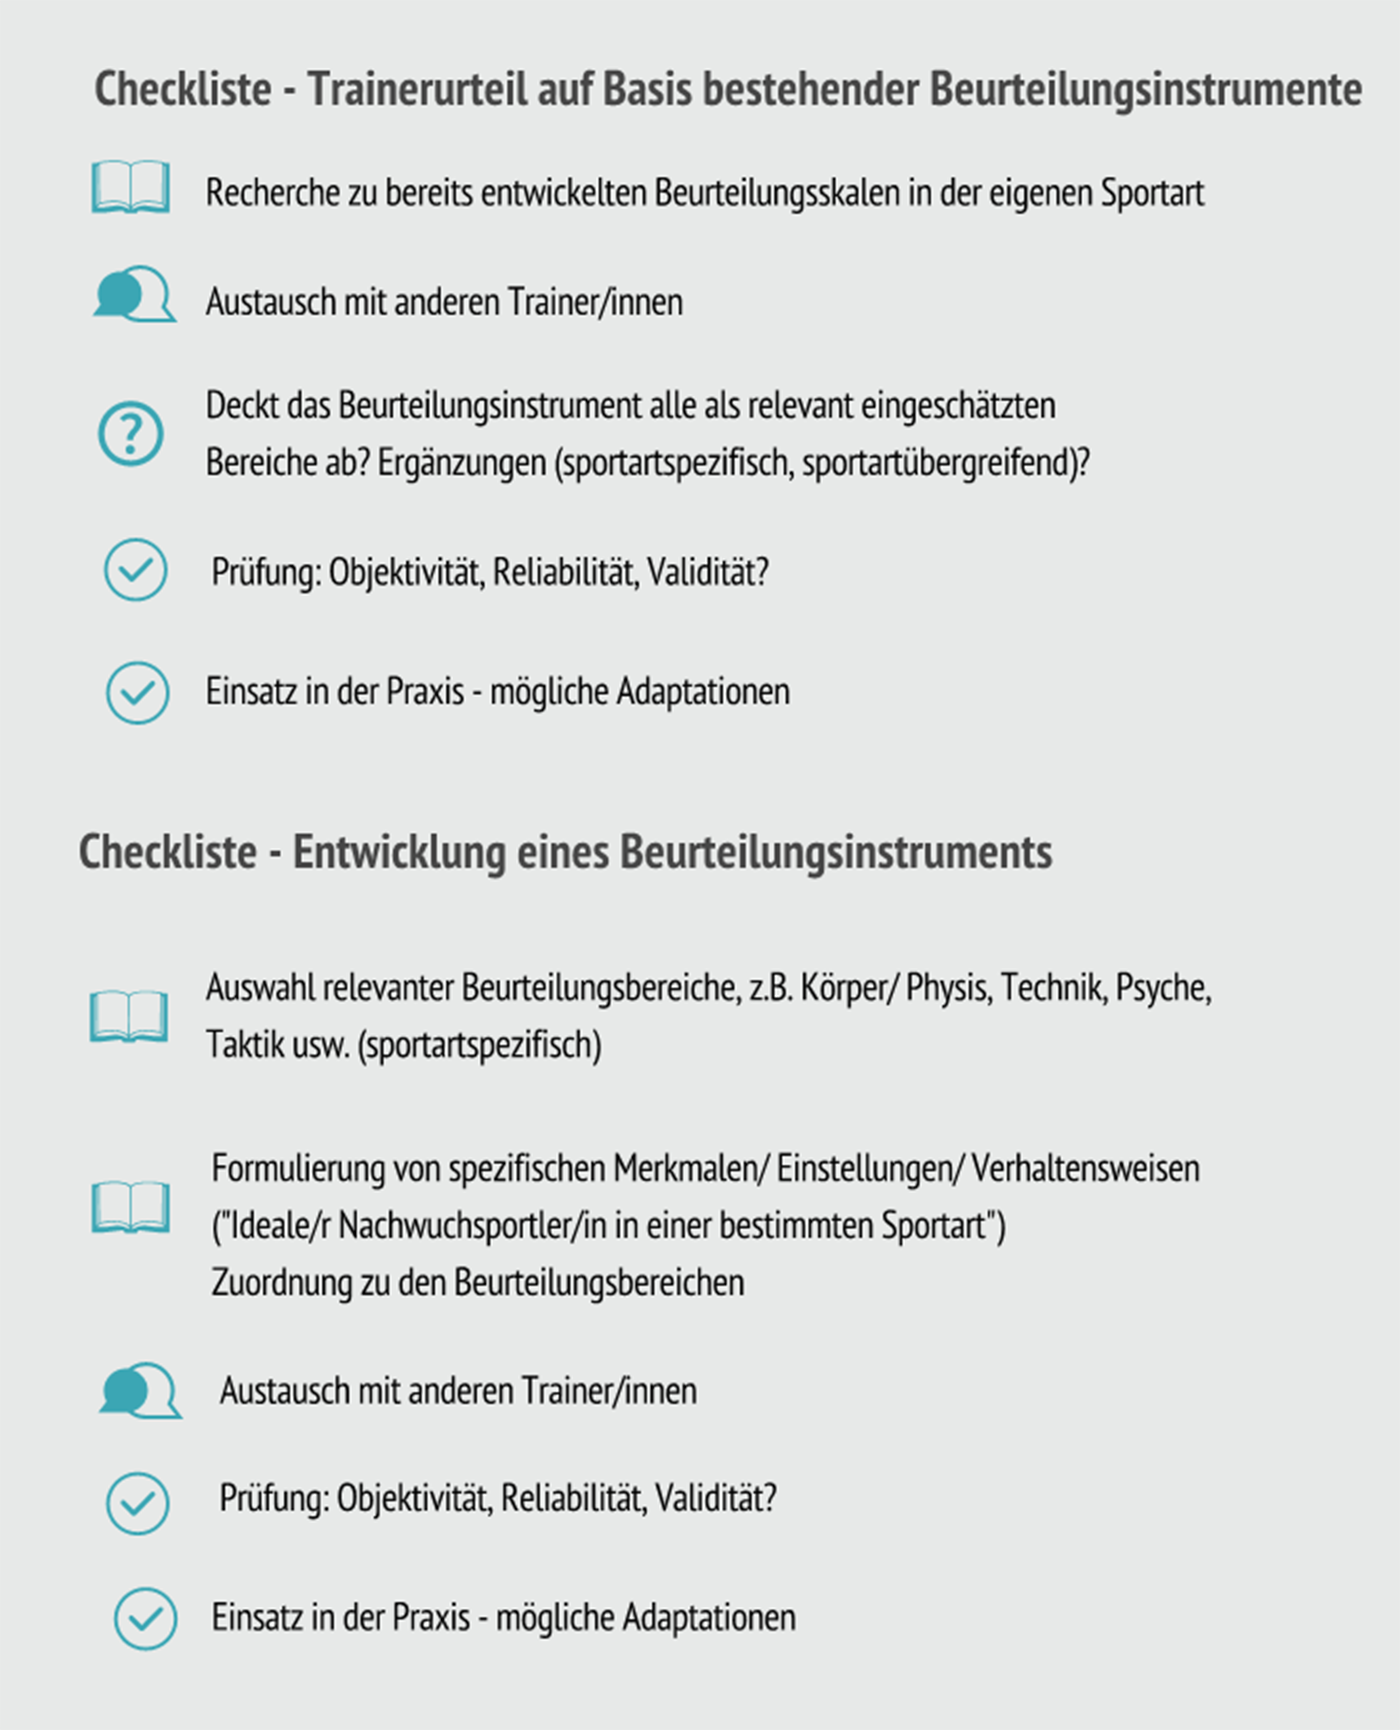 Abbildung 2: Checkliste von Dr. A. Heinrich, IAT Leipzig